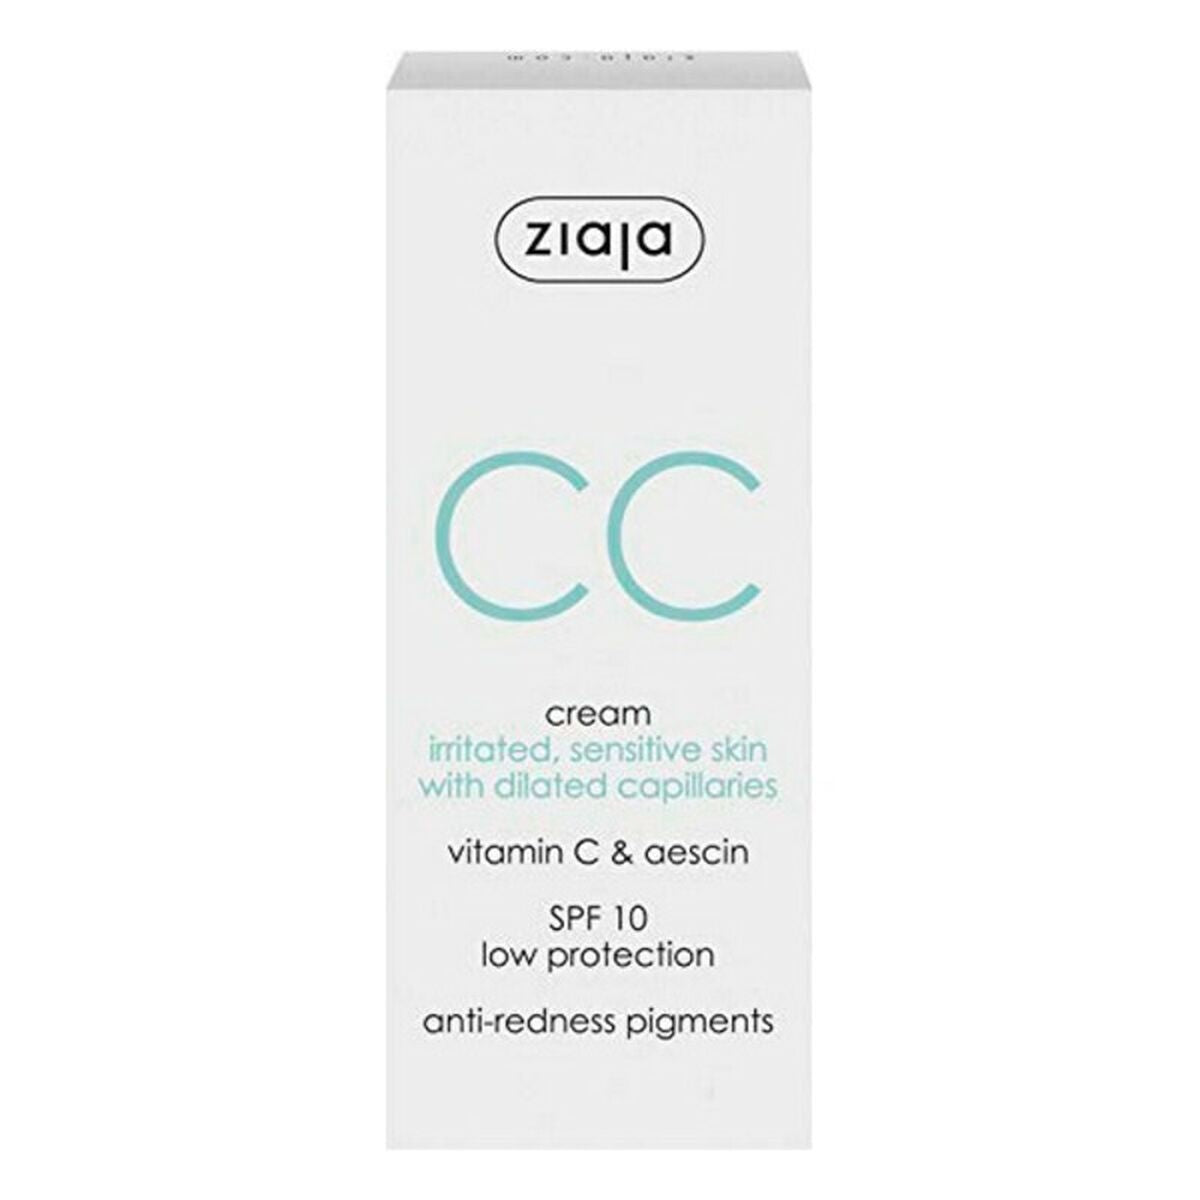 CC Cream Ziaja Cc Cream Spf 10 50 ml-0